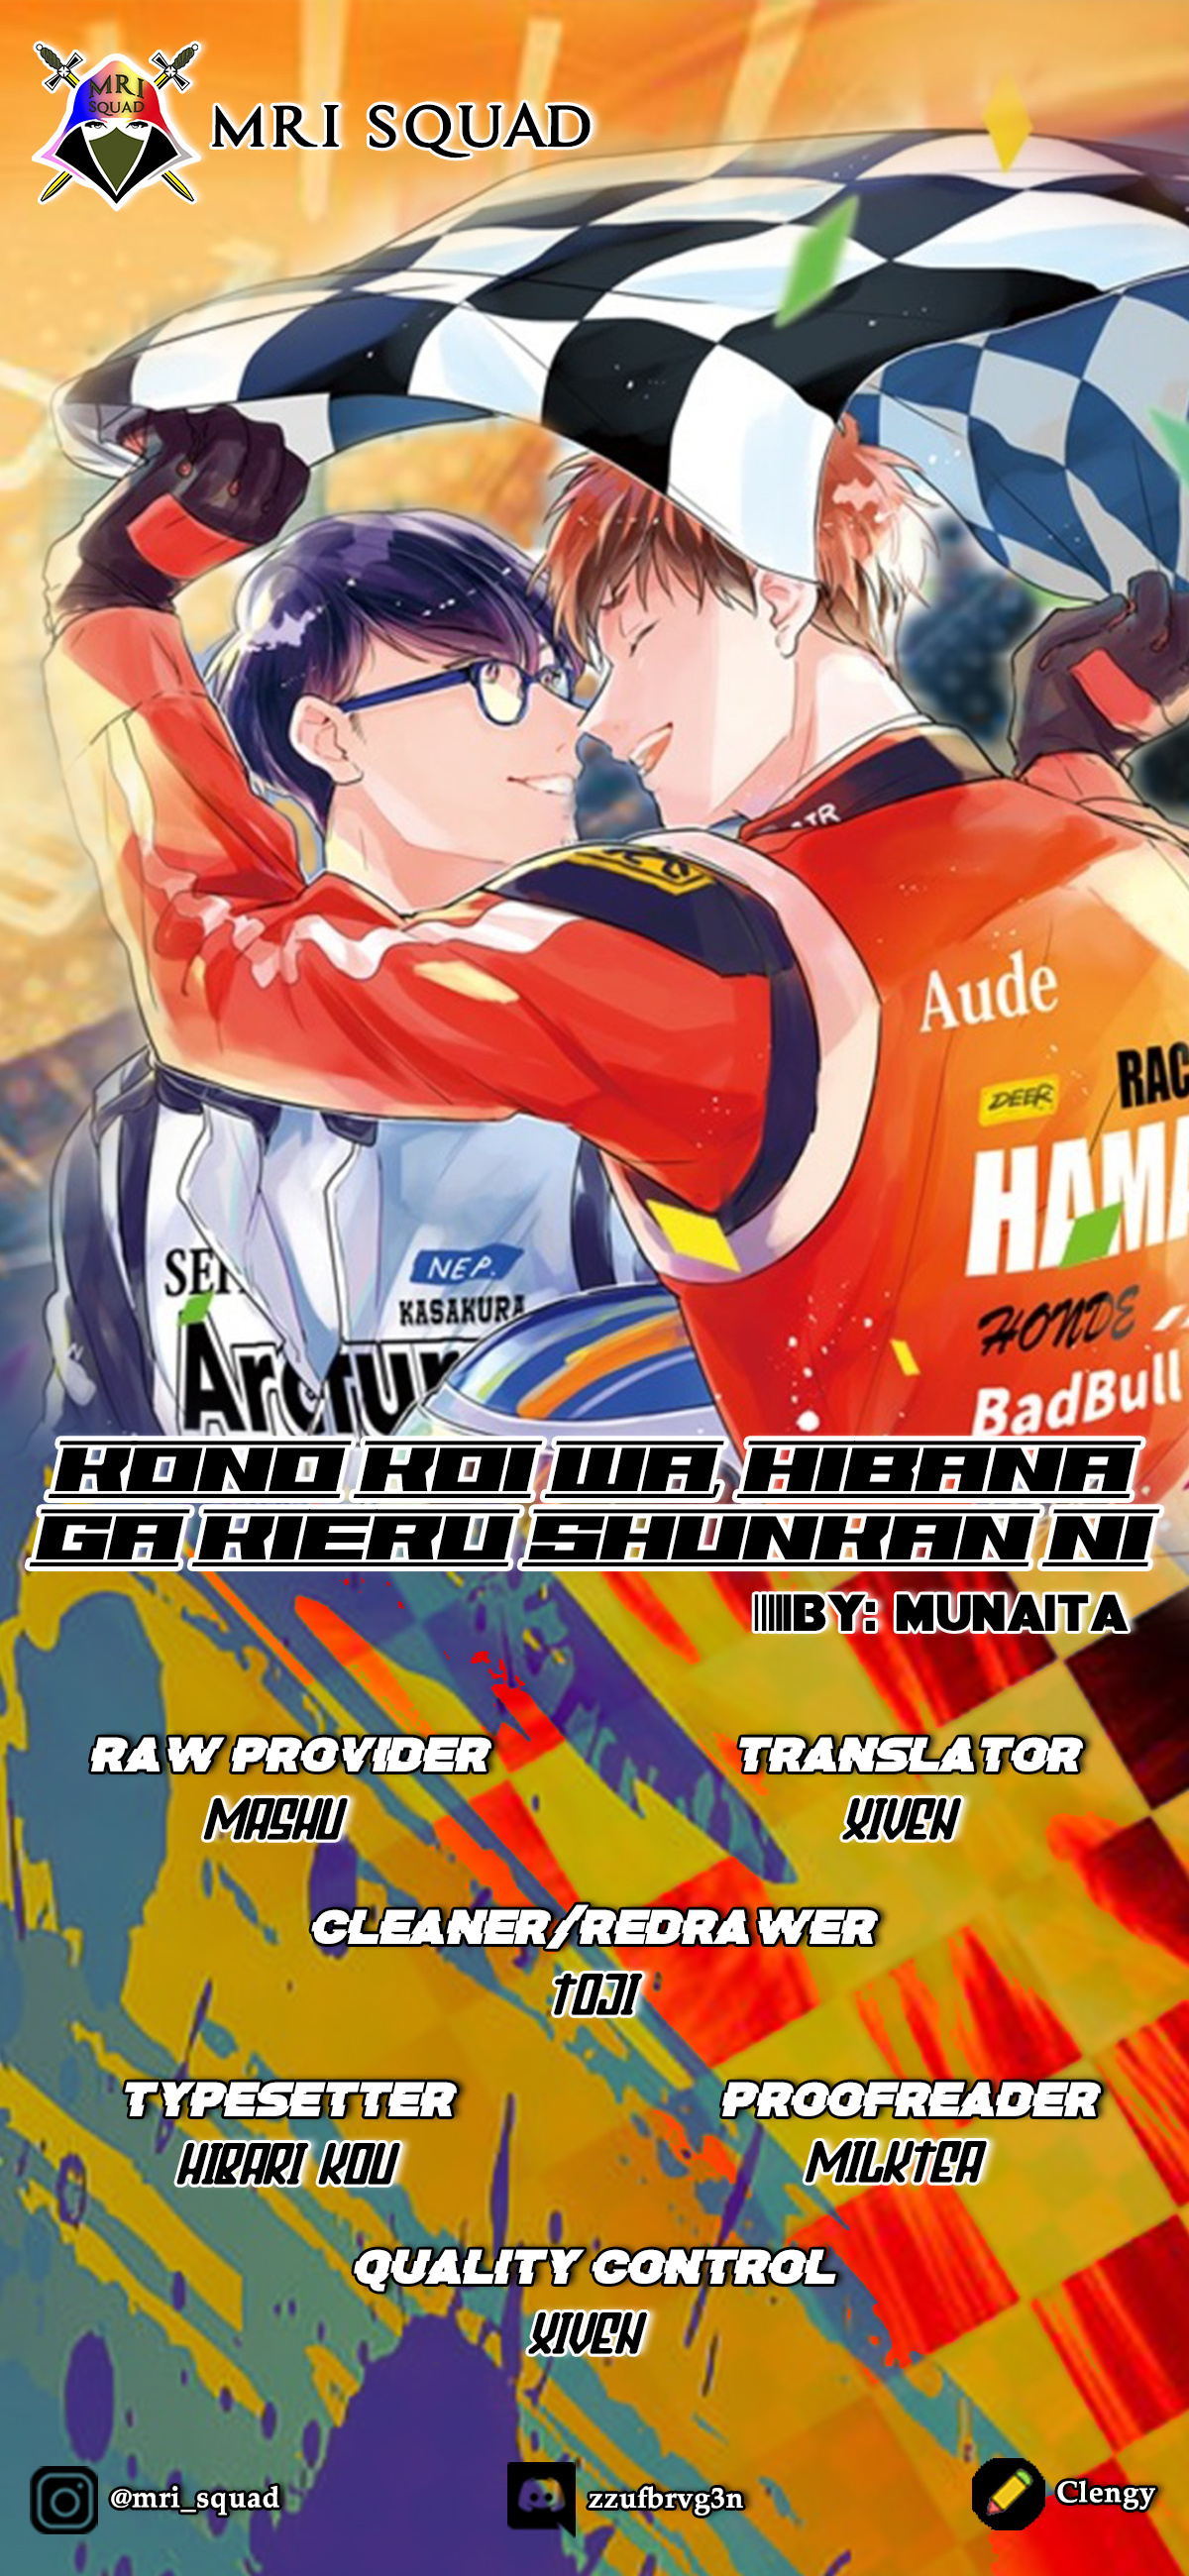 Kono Koi Wa, Hibana Ga Kieru Shunkan Ni Vol.3 Chapter 5 - Picture 2